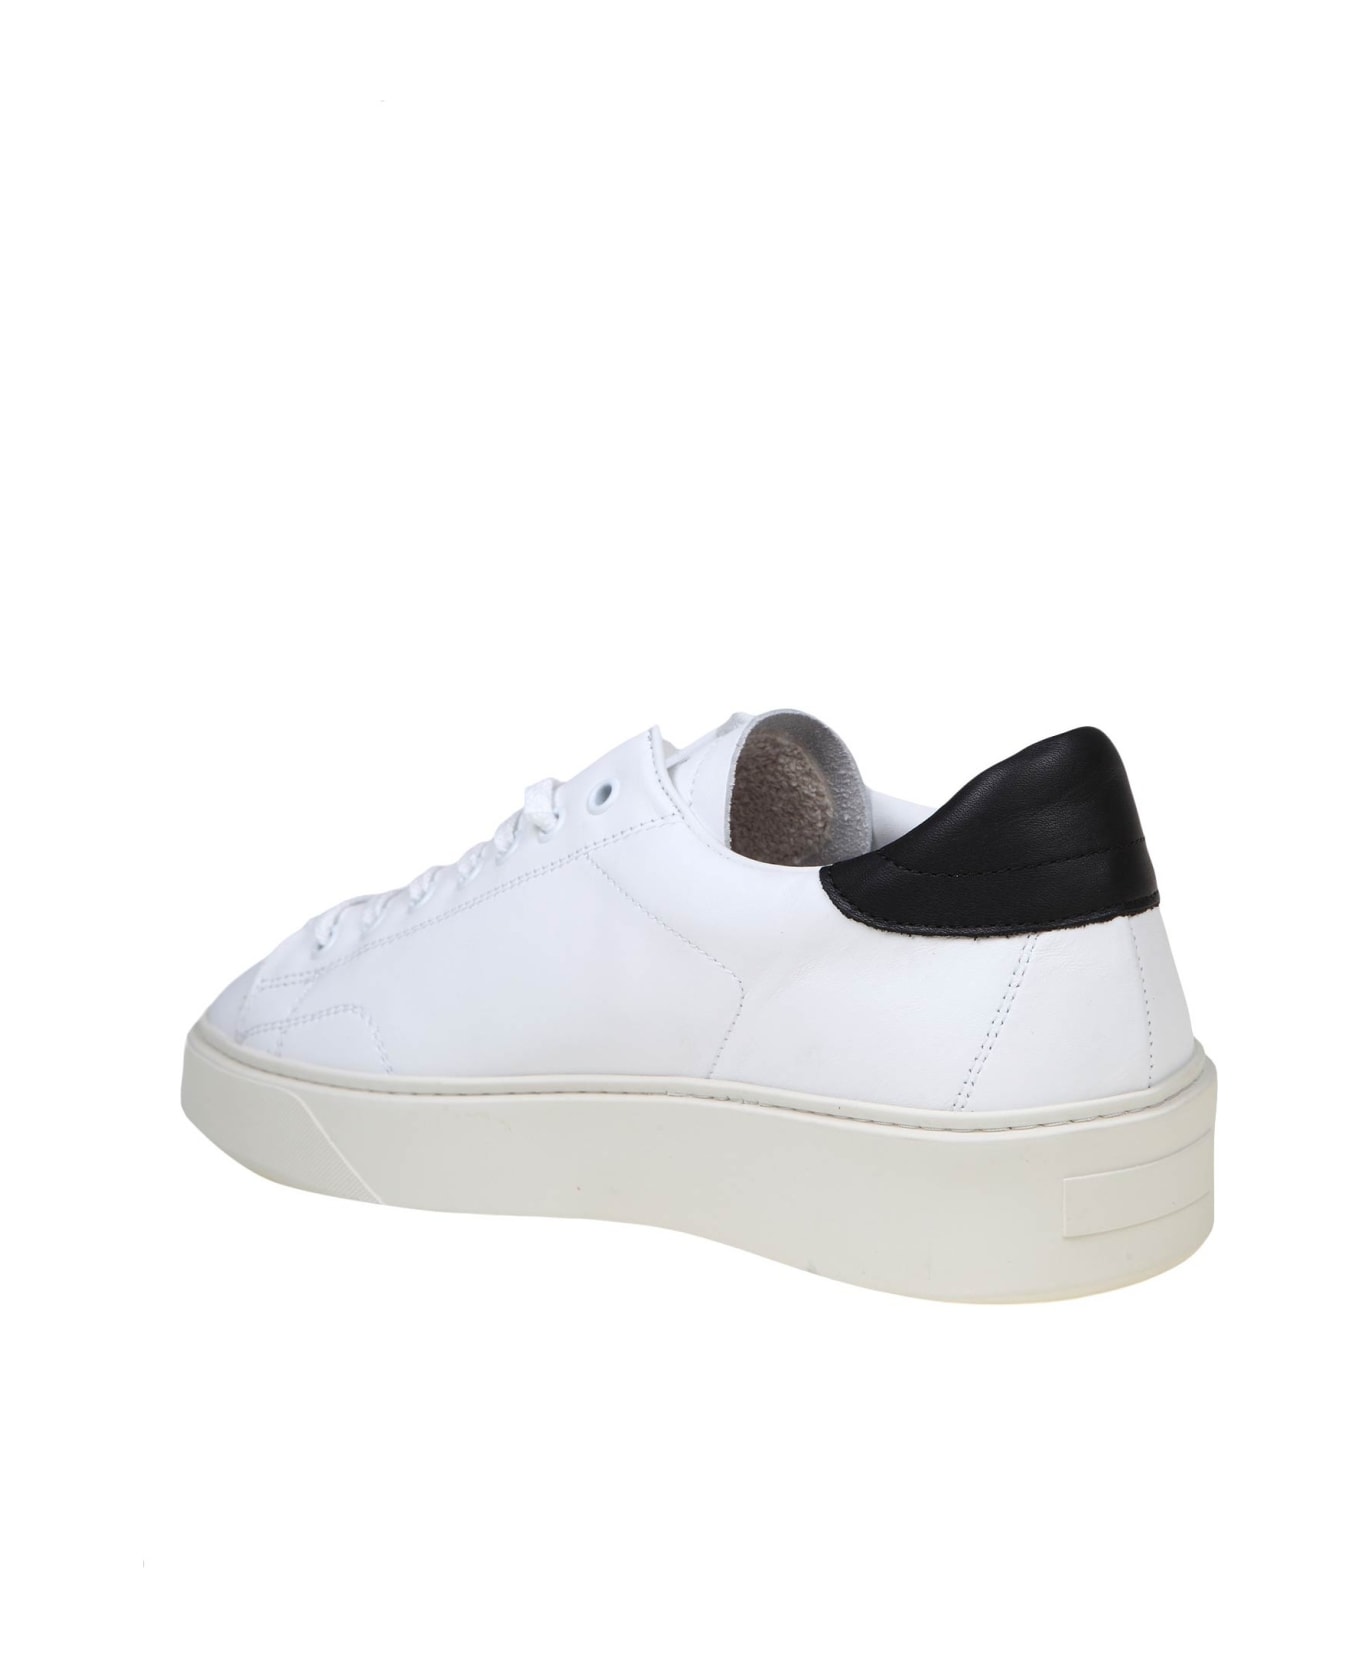 D.A.T.E. Levante Sneakers In Black/white Leather - White/Black